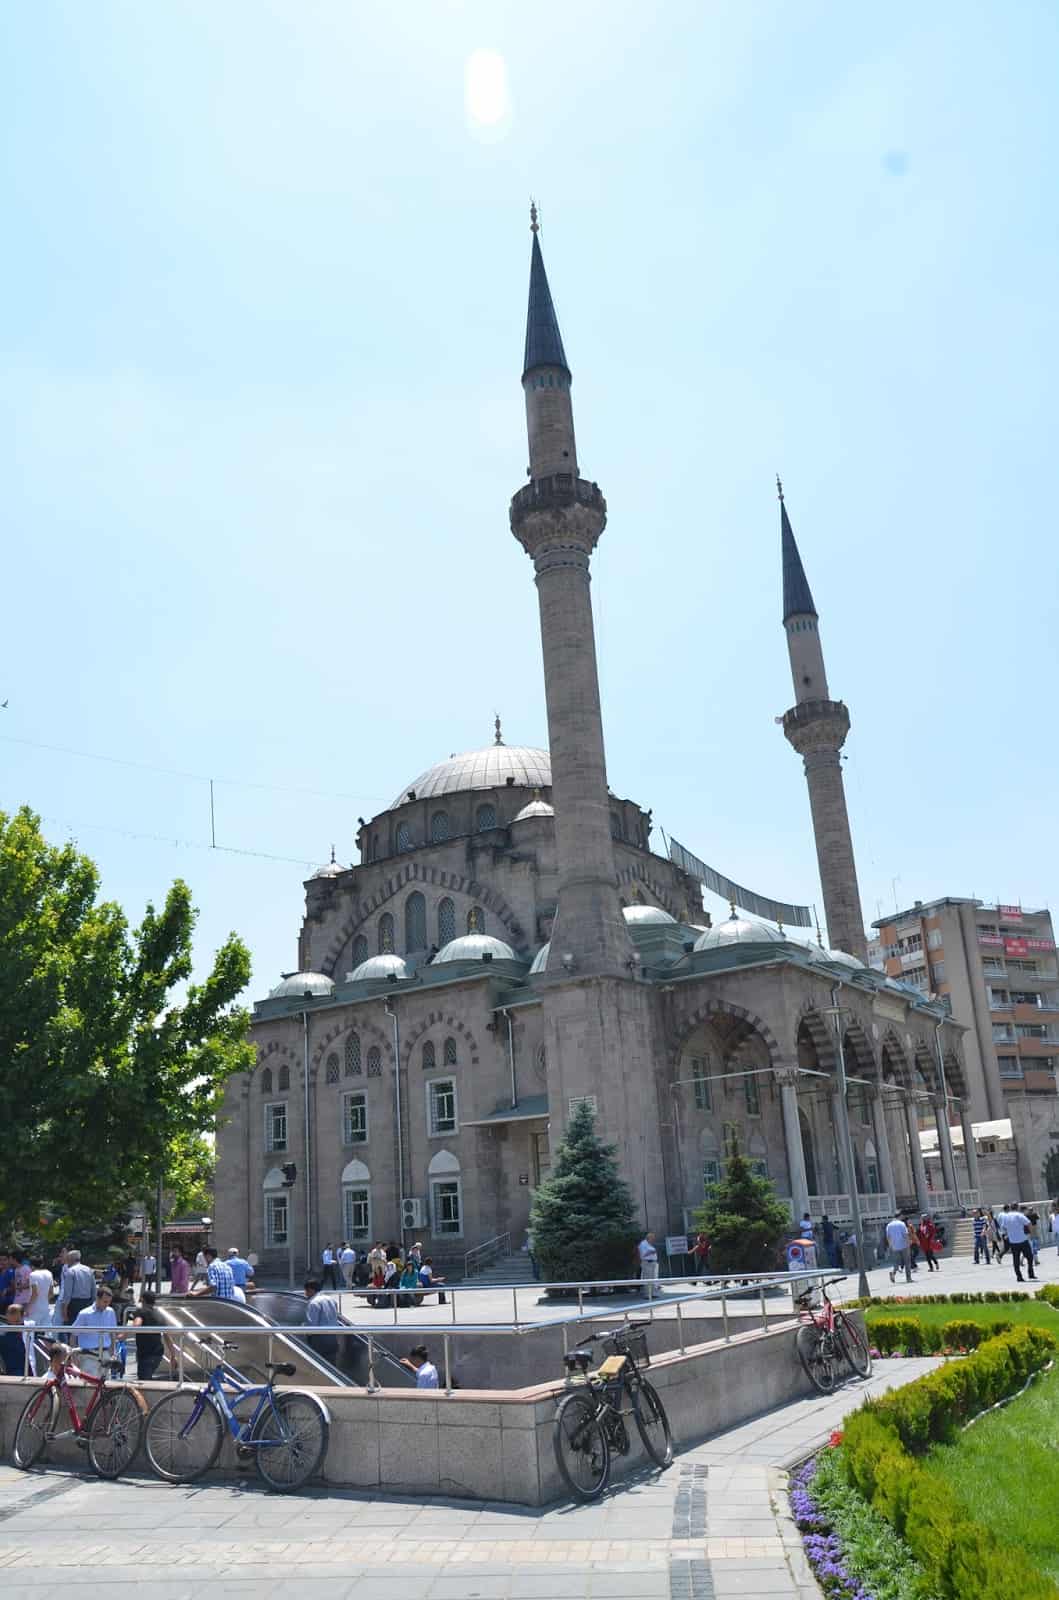 Bürüngüz Mosque in Kayseri, Turkey